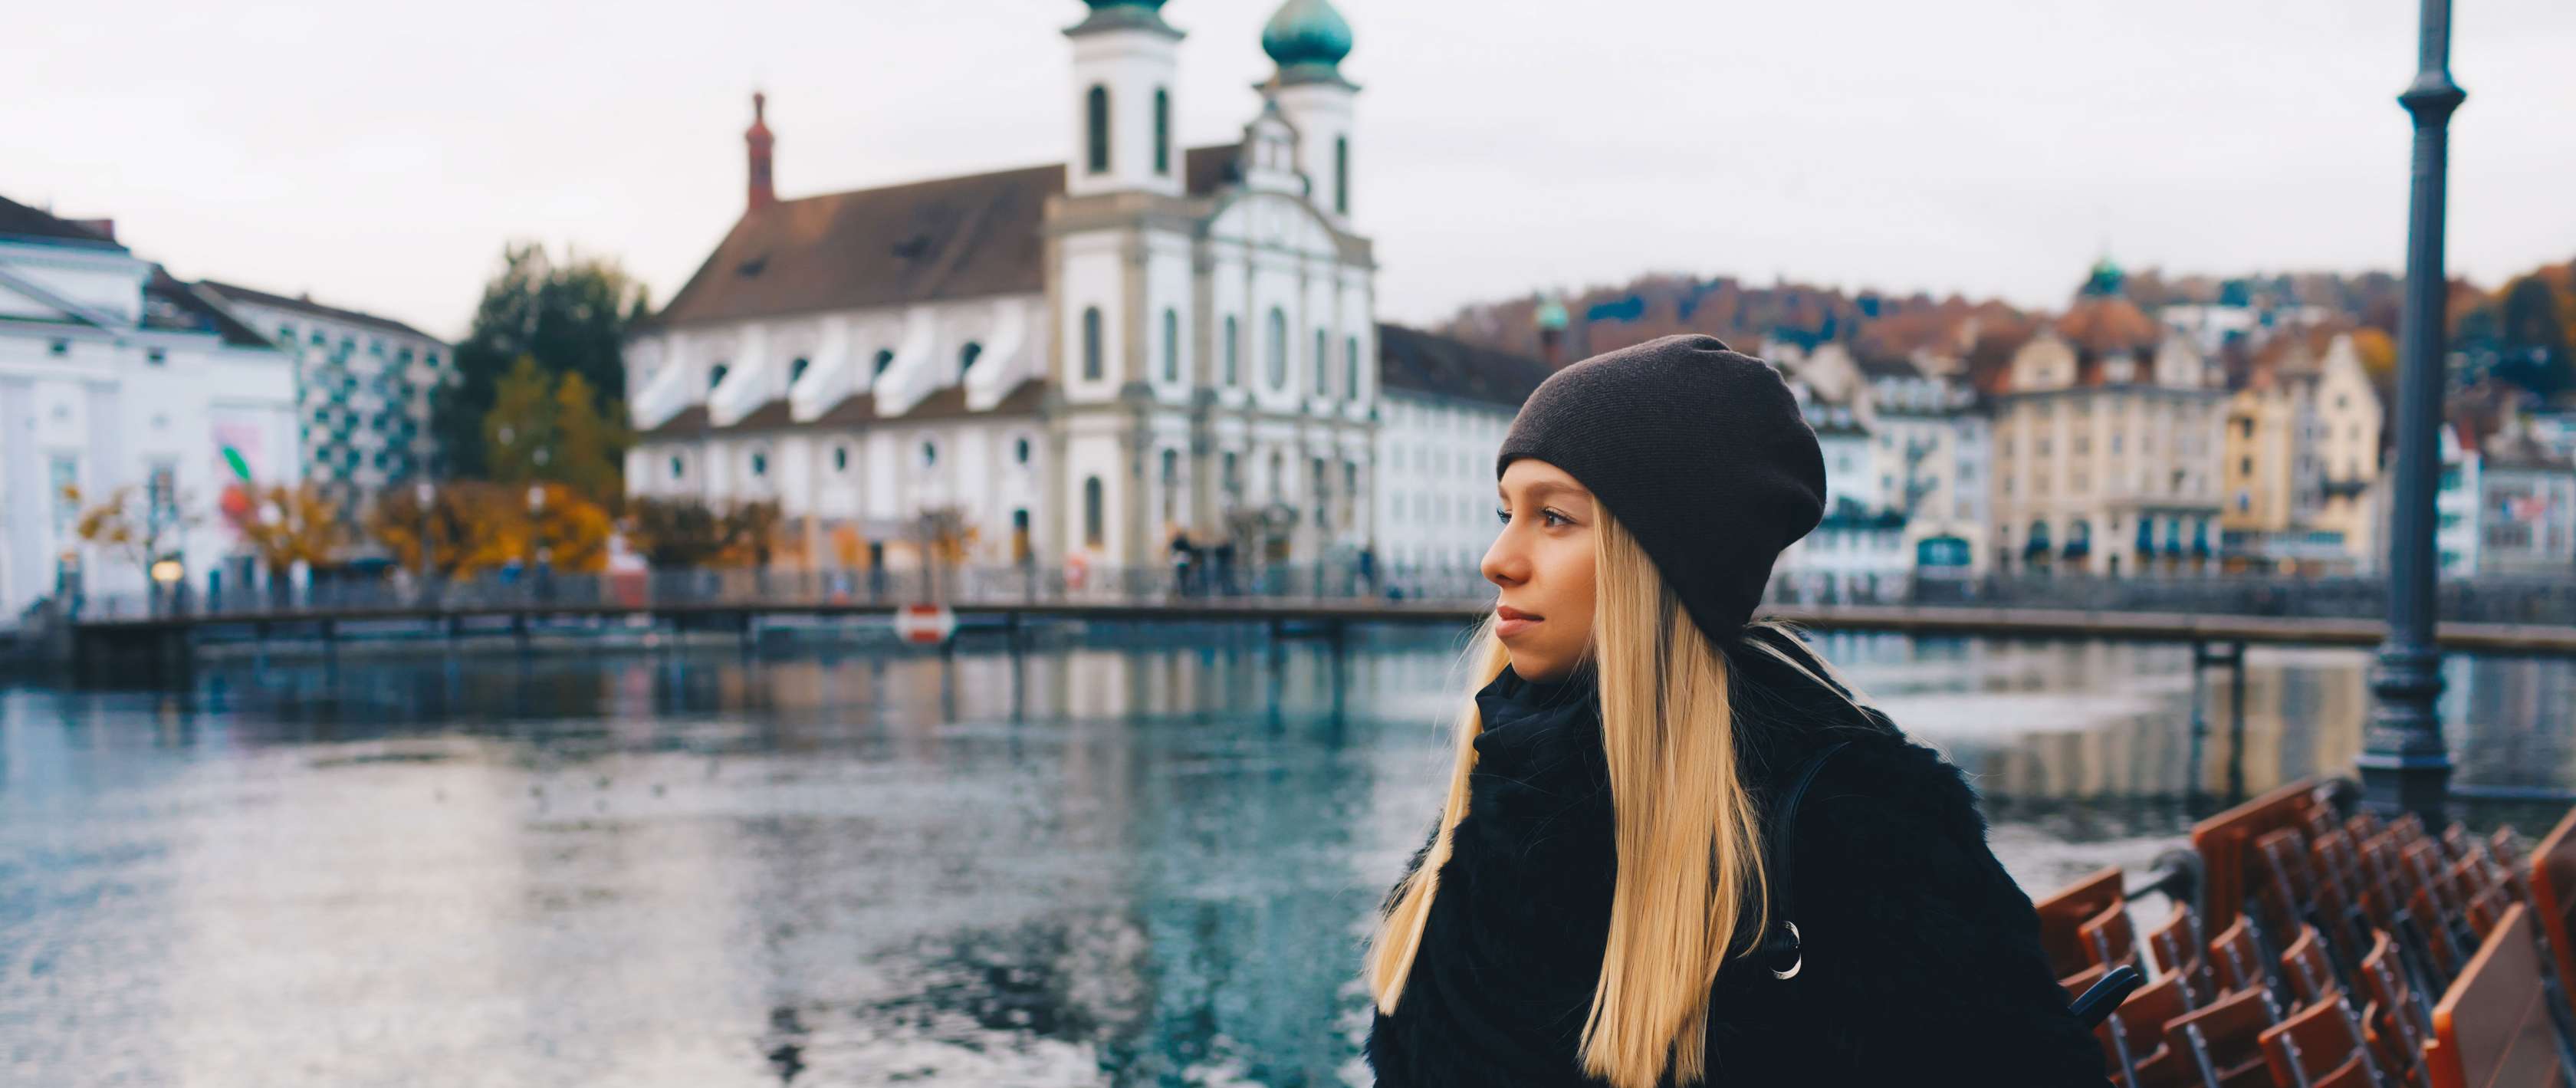 Frau in Luzern blickt auf den Fluss, hinter ihr ist eine Häuserreihe zu sehen